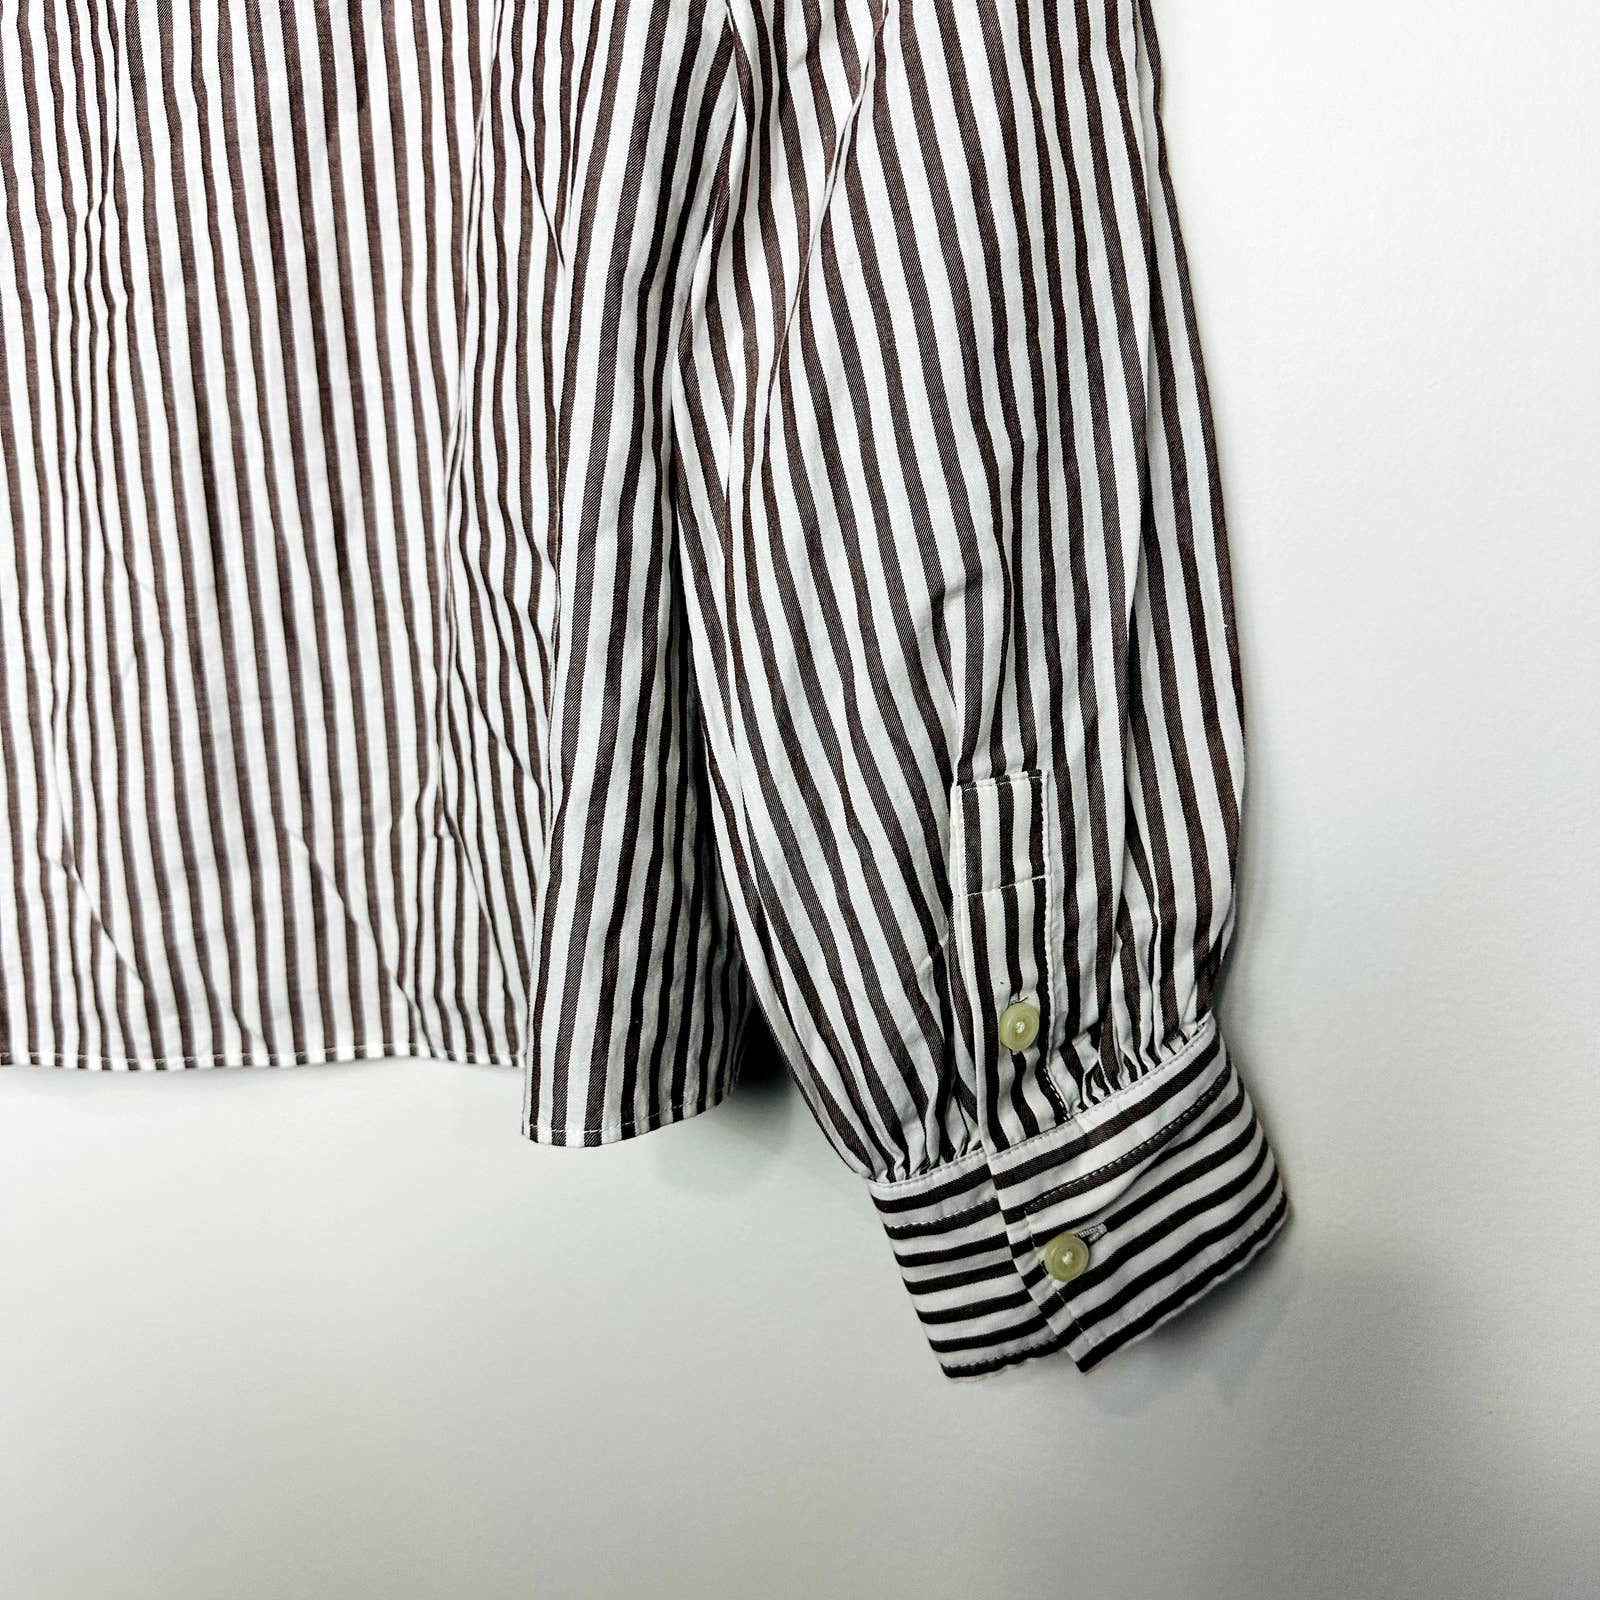 Everlane NWOT Wing Shoulder Mockneck Stripes Long Sleeve Top Pecan White Size 4